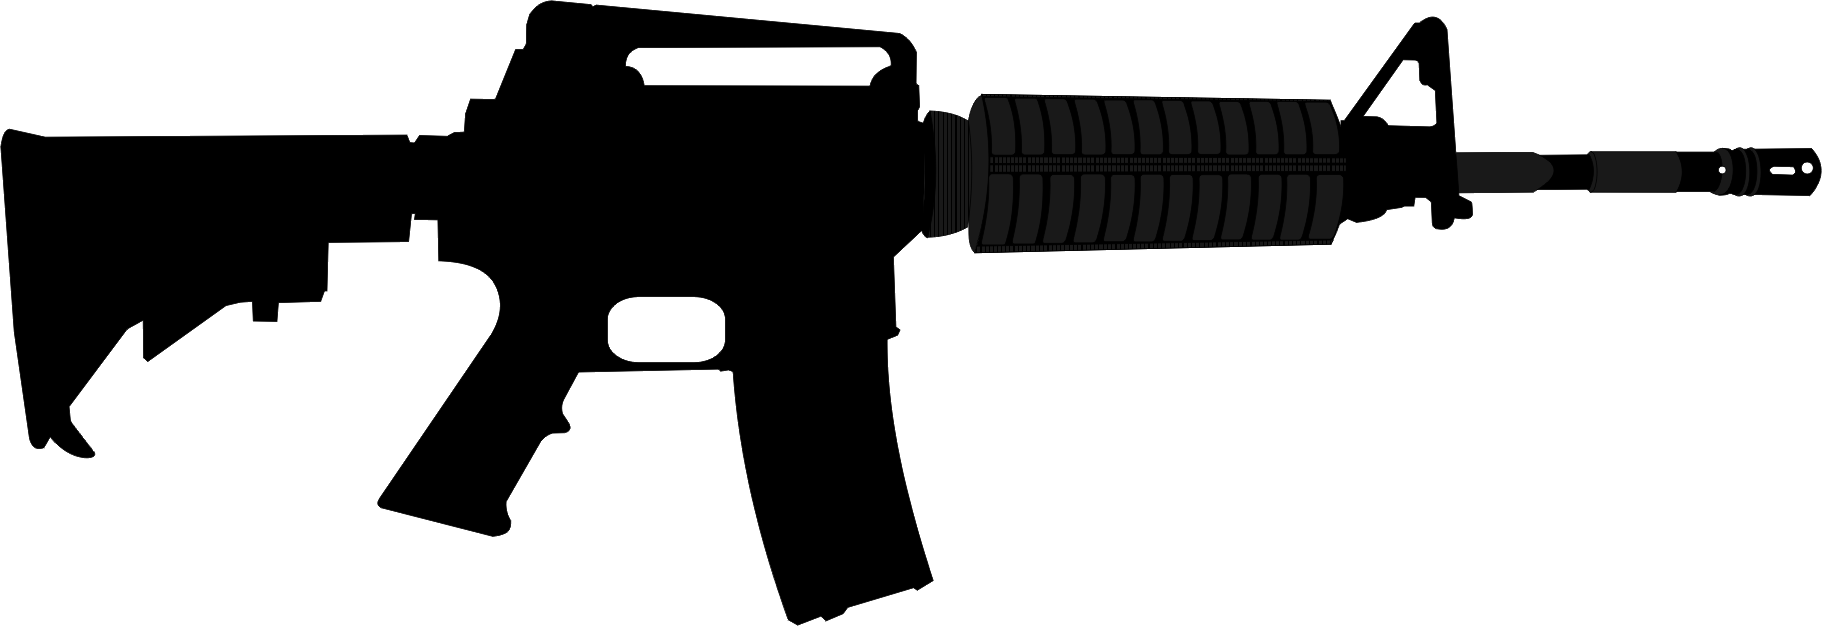 Ar 15 Style Rifle Assault Rifle Colt Ar 15 Firearm - Ar 15 Clip Art (1822x626)